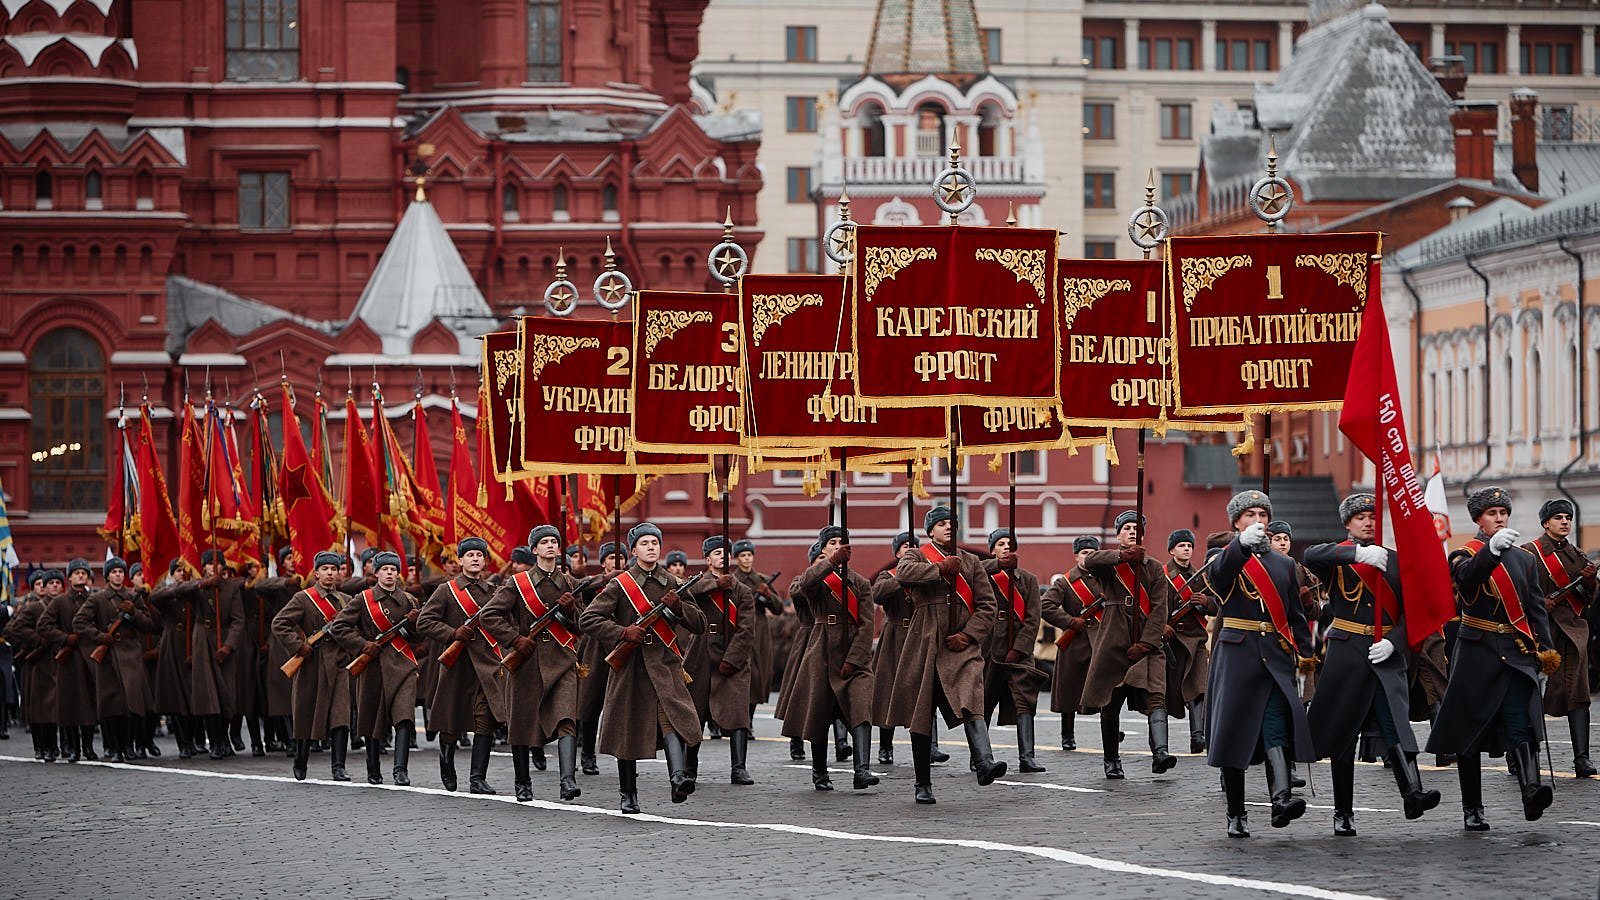 Где проходил первый парад. 24 Июня парад Победы в Москве 1945. Парад Победы на красной площади 1945. Парад 24 июня 1945 года в Москве на красной площади. Знамя Победы на параде Победы 1945 года.